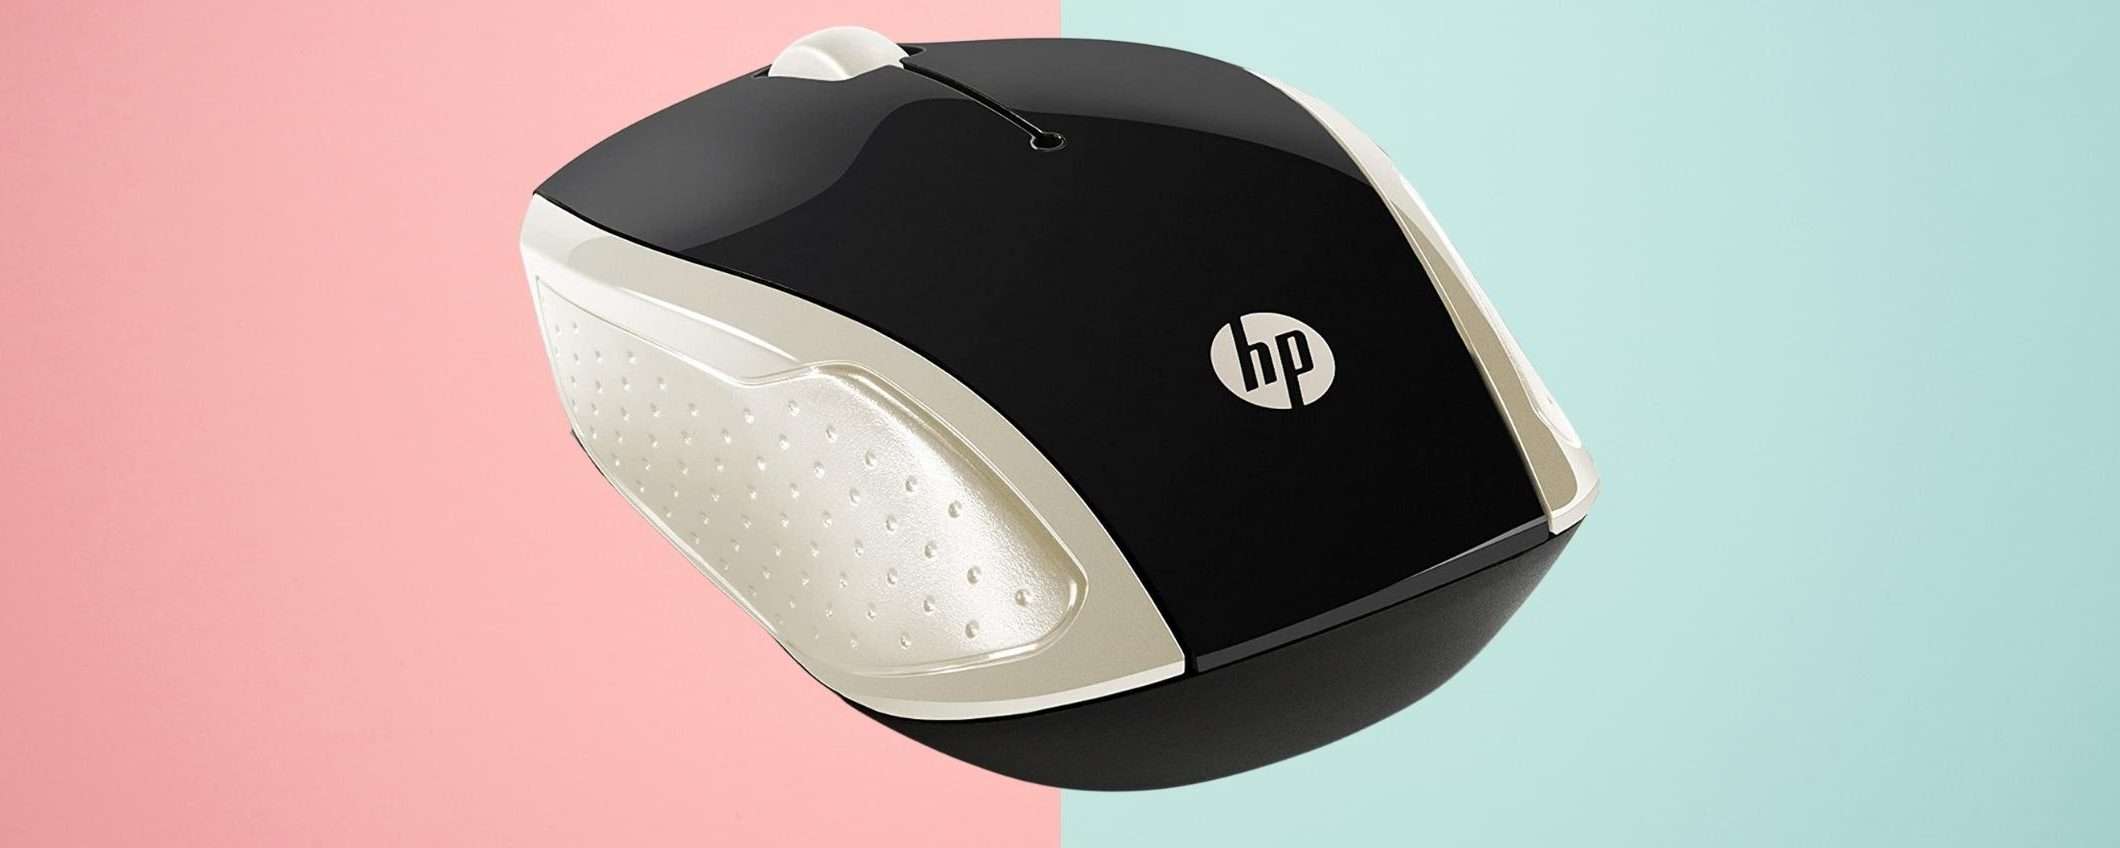 Mouse wireless HP: spendi 12 euro ed hai tutto a portata di mano